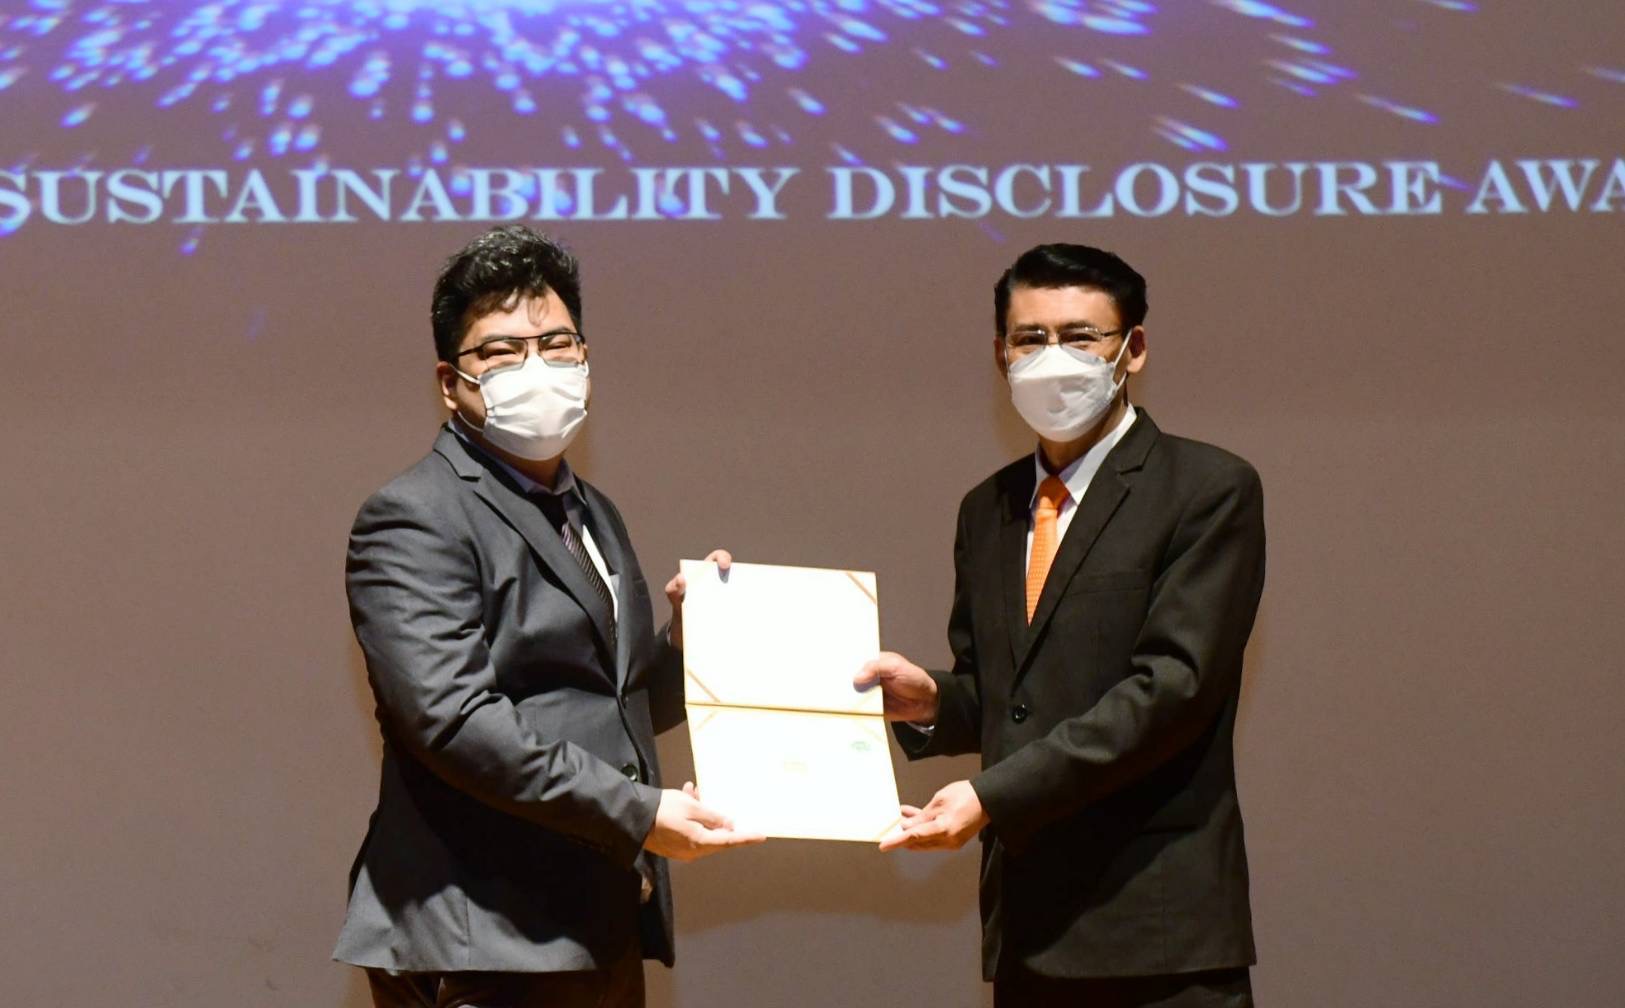 ธอส. รับรางวัลเกียรติคุณ Sustainability Disclosure Award ประจำปี 2564